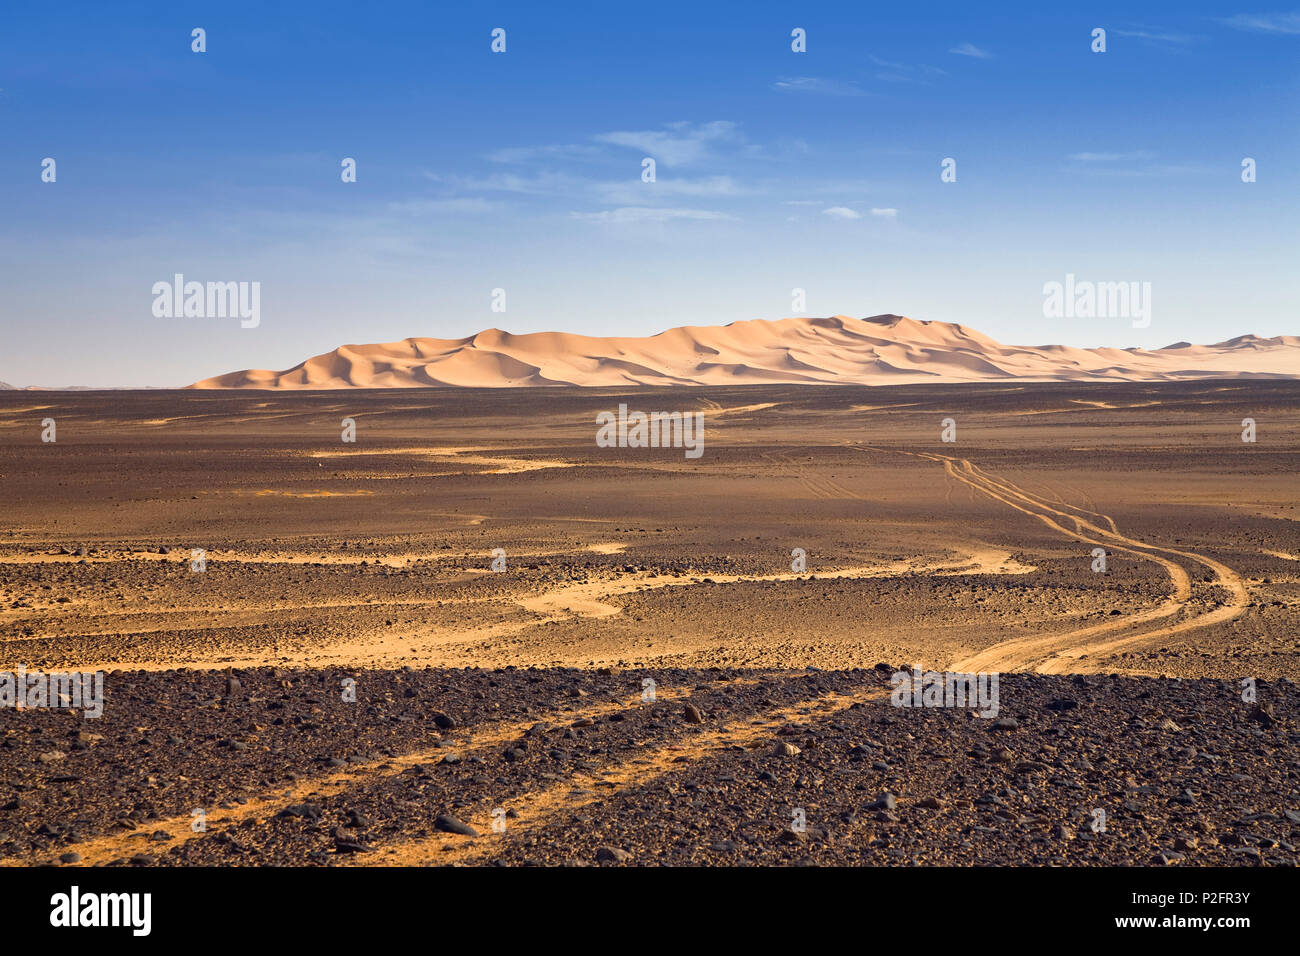 Dunes in the Stony Desert, car track, Black Desert, Libya, Africa Stock Photo